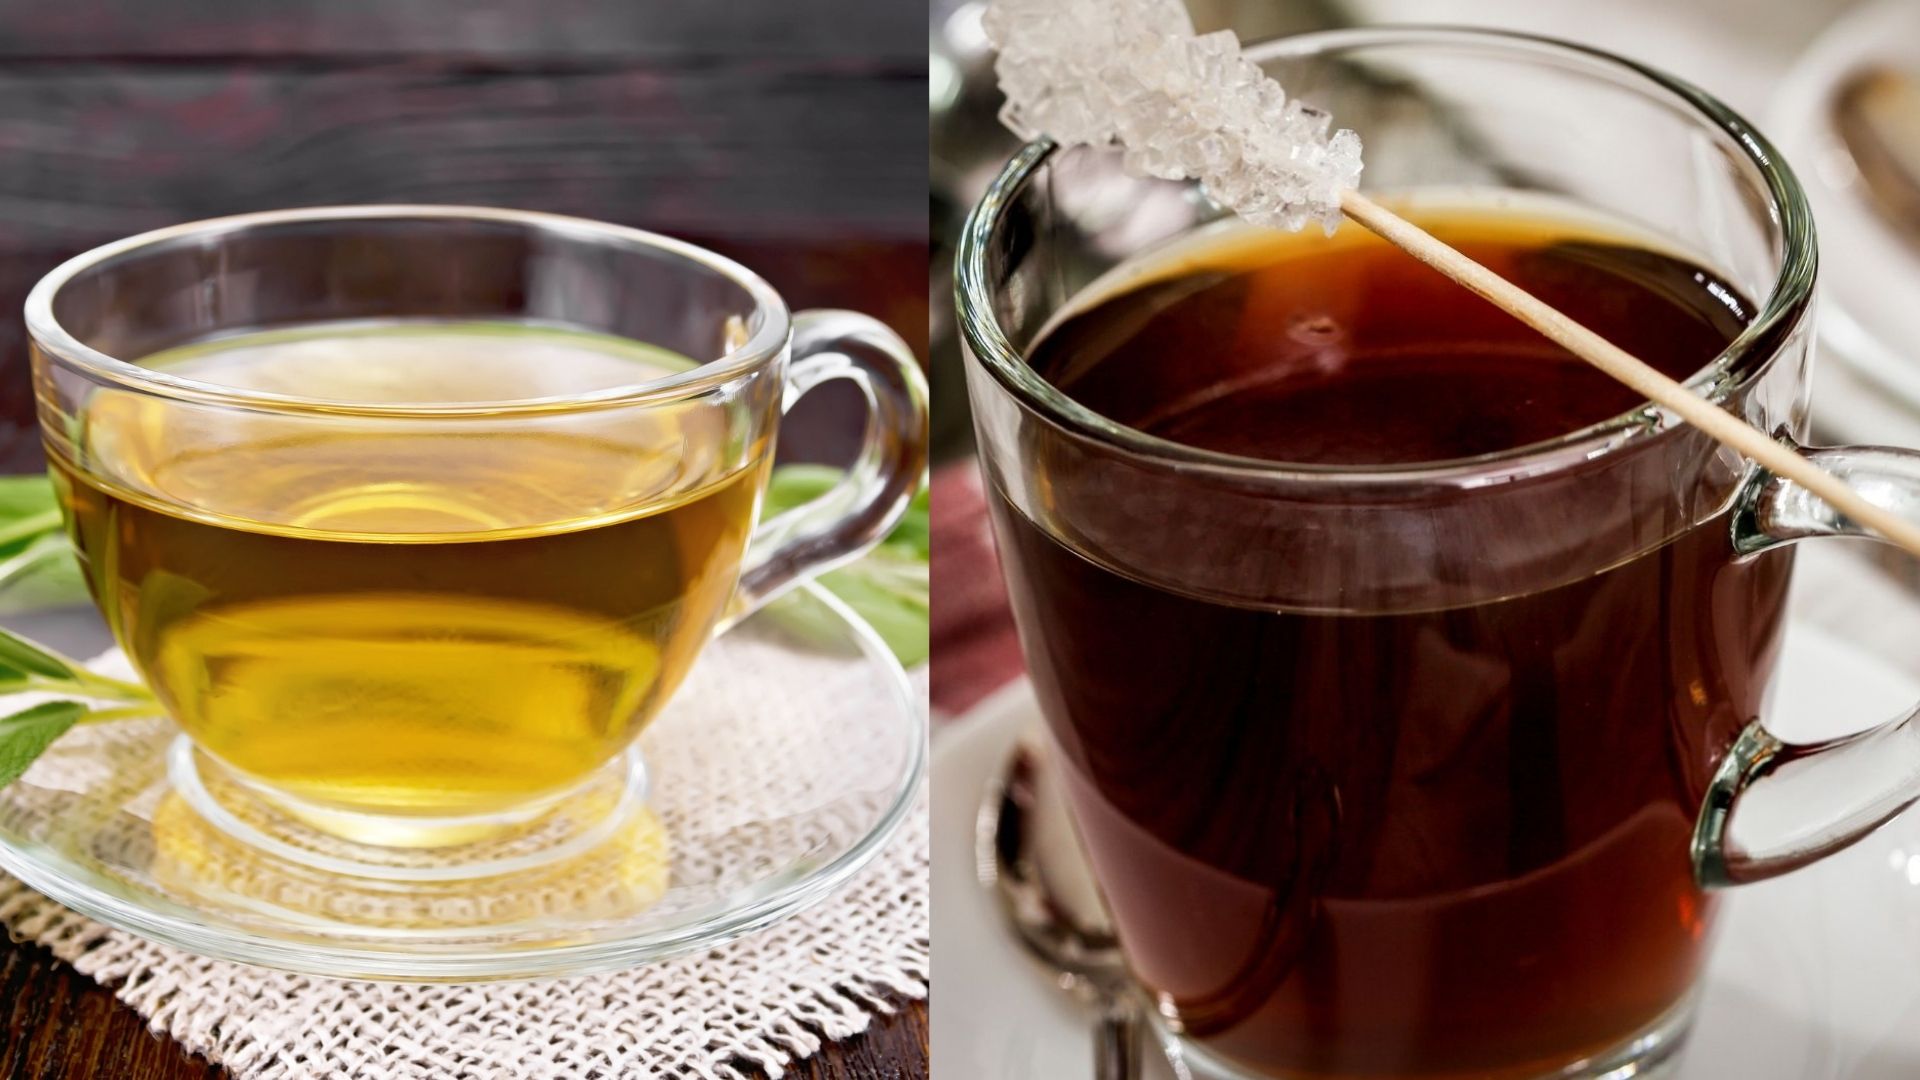 Green Tea versus Black Tea